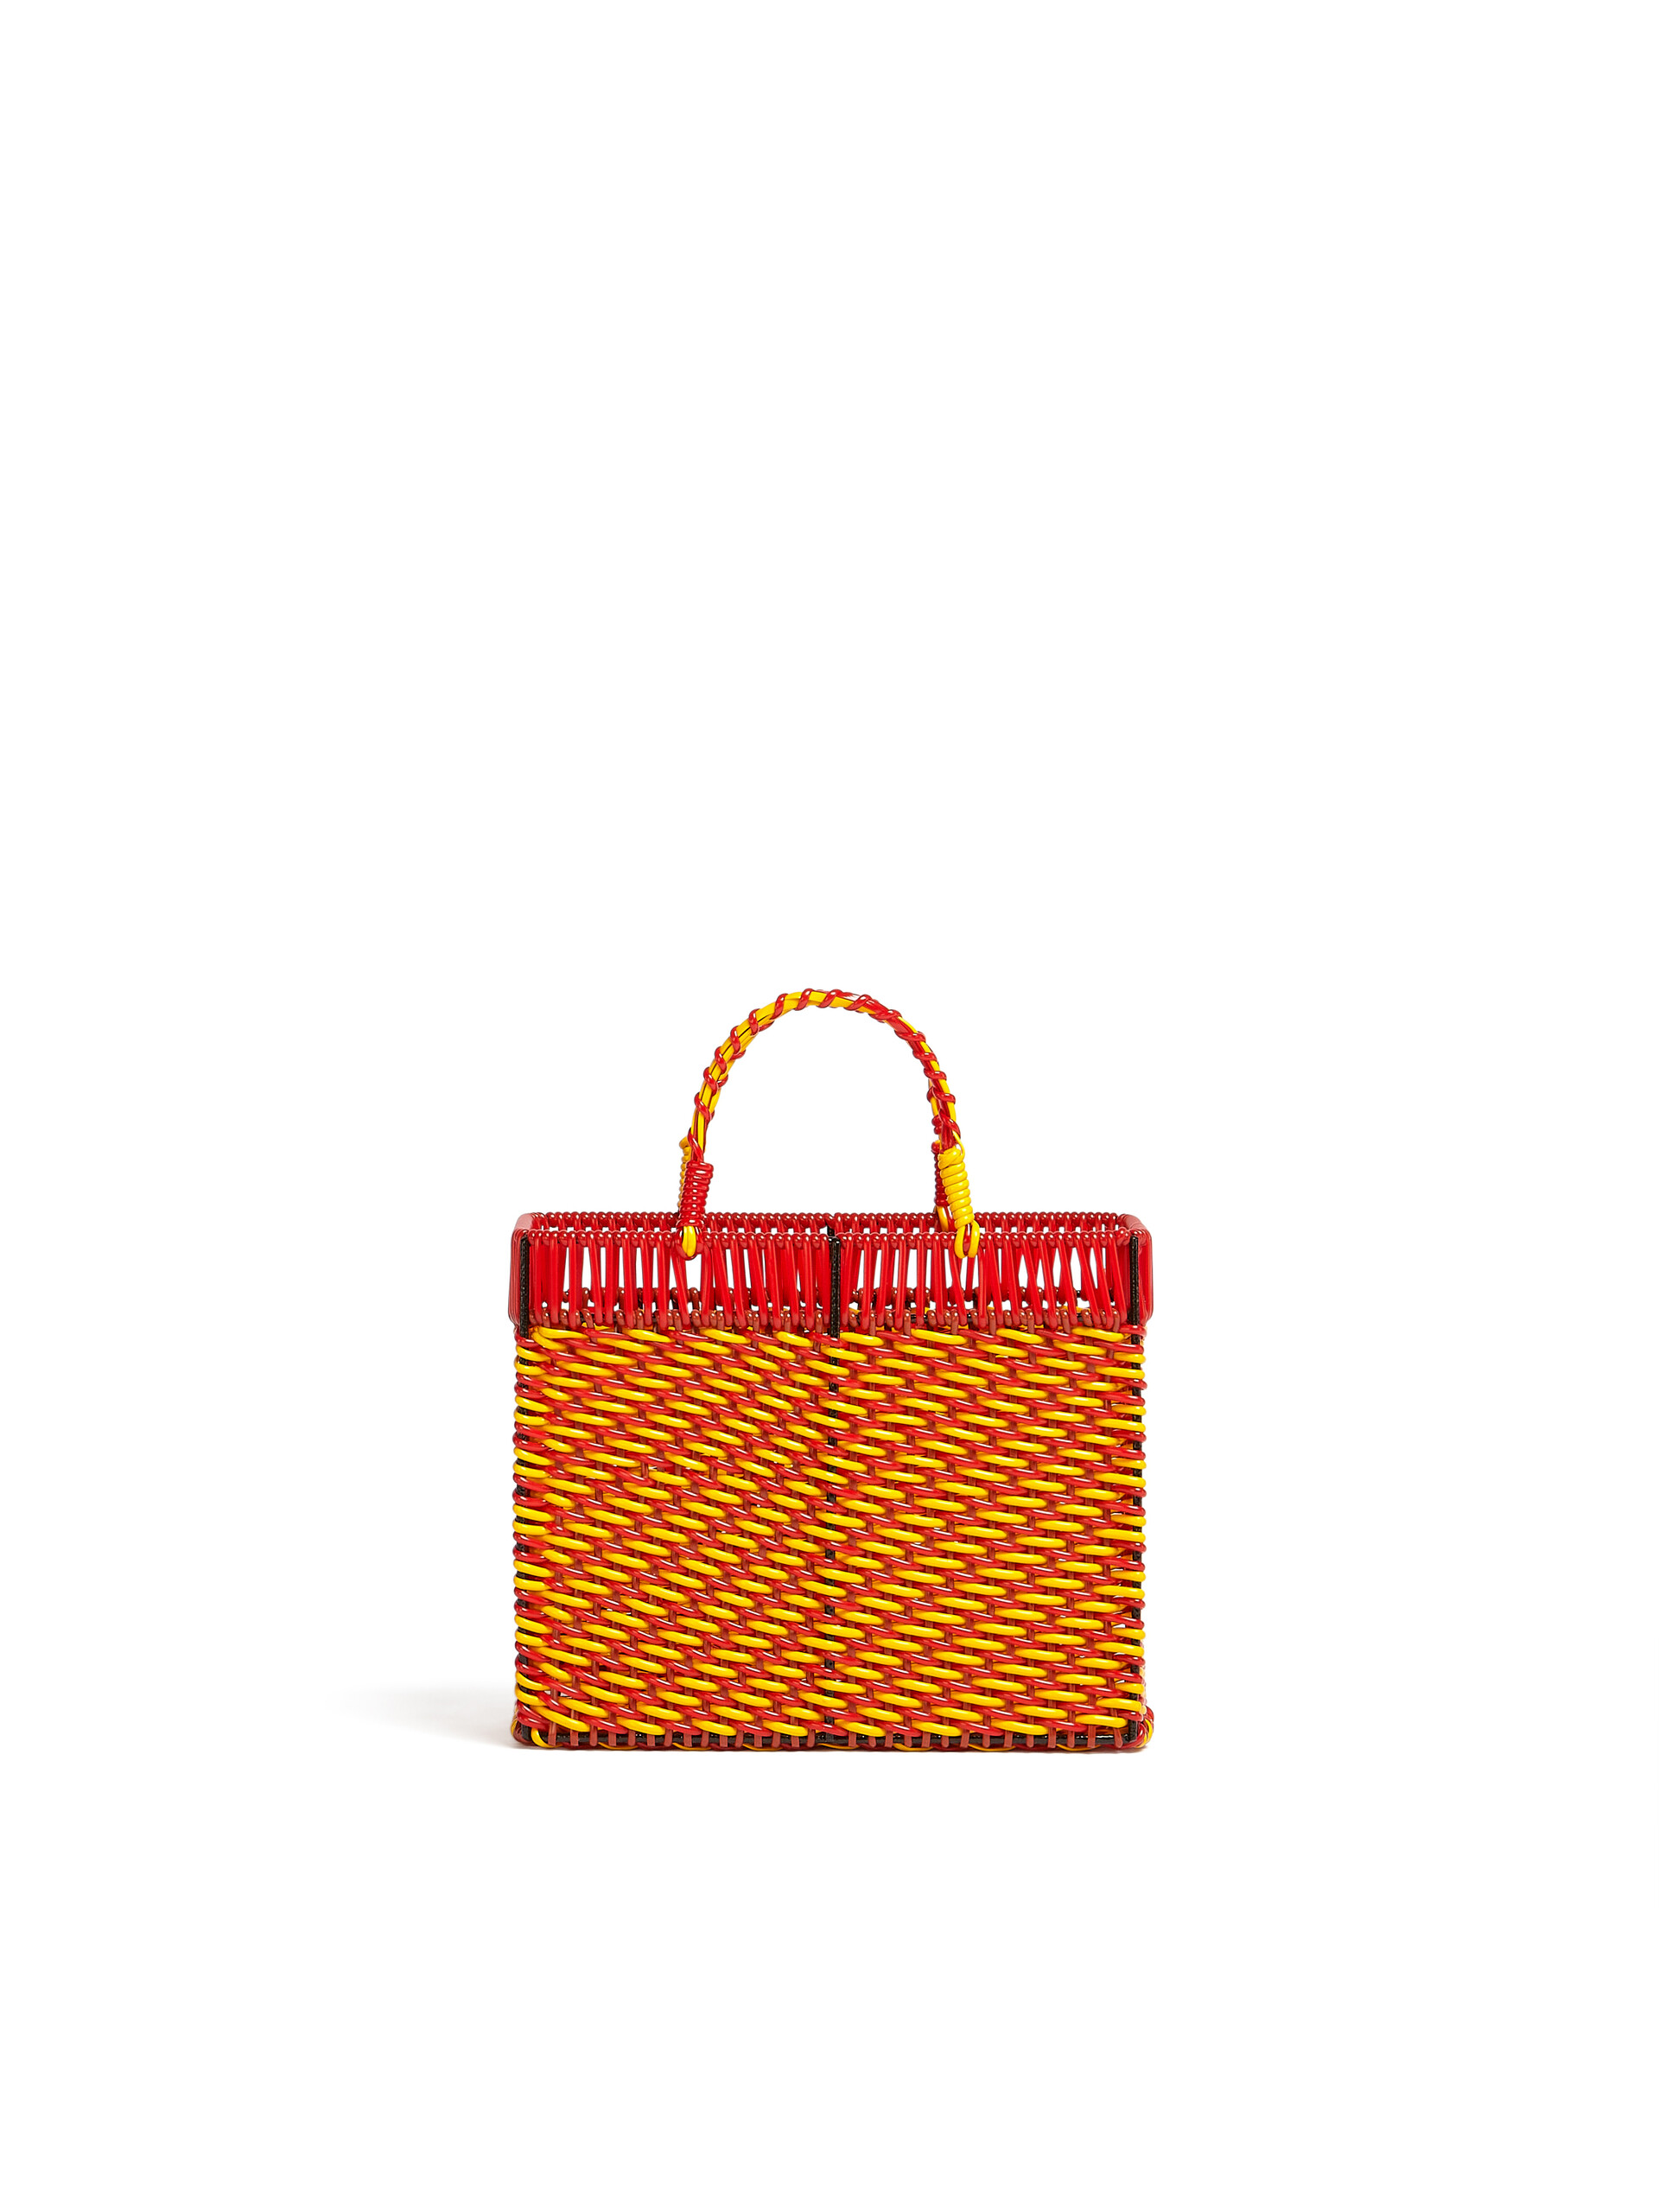 Panier MARNI MARKET orange et rouge - Accessoires - Image 3